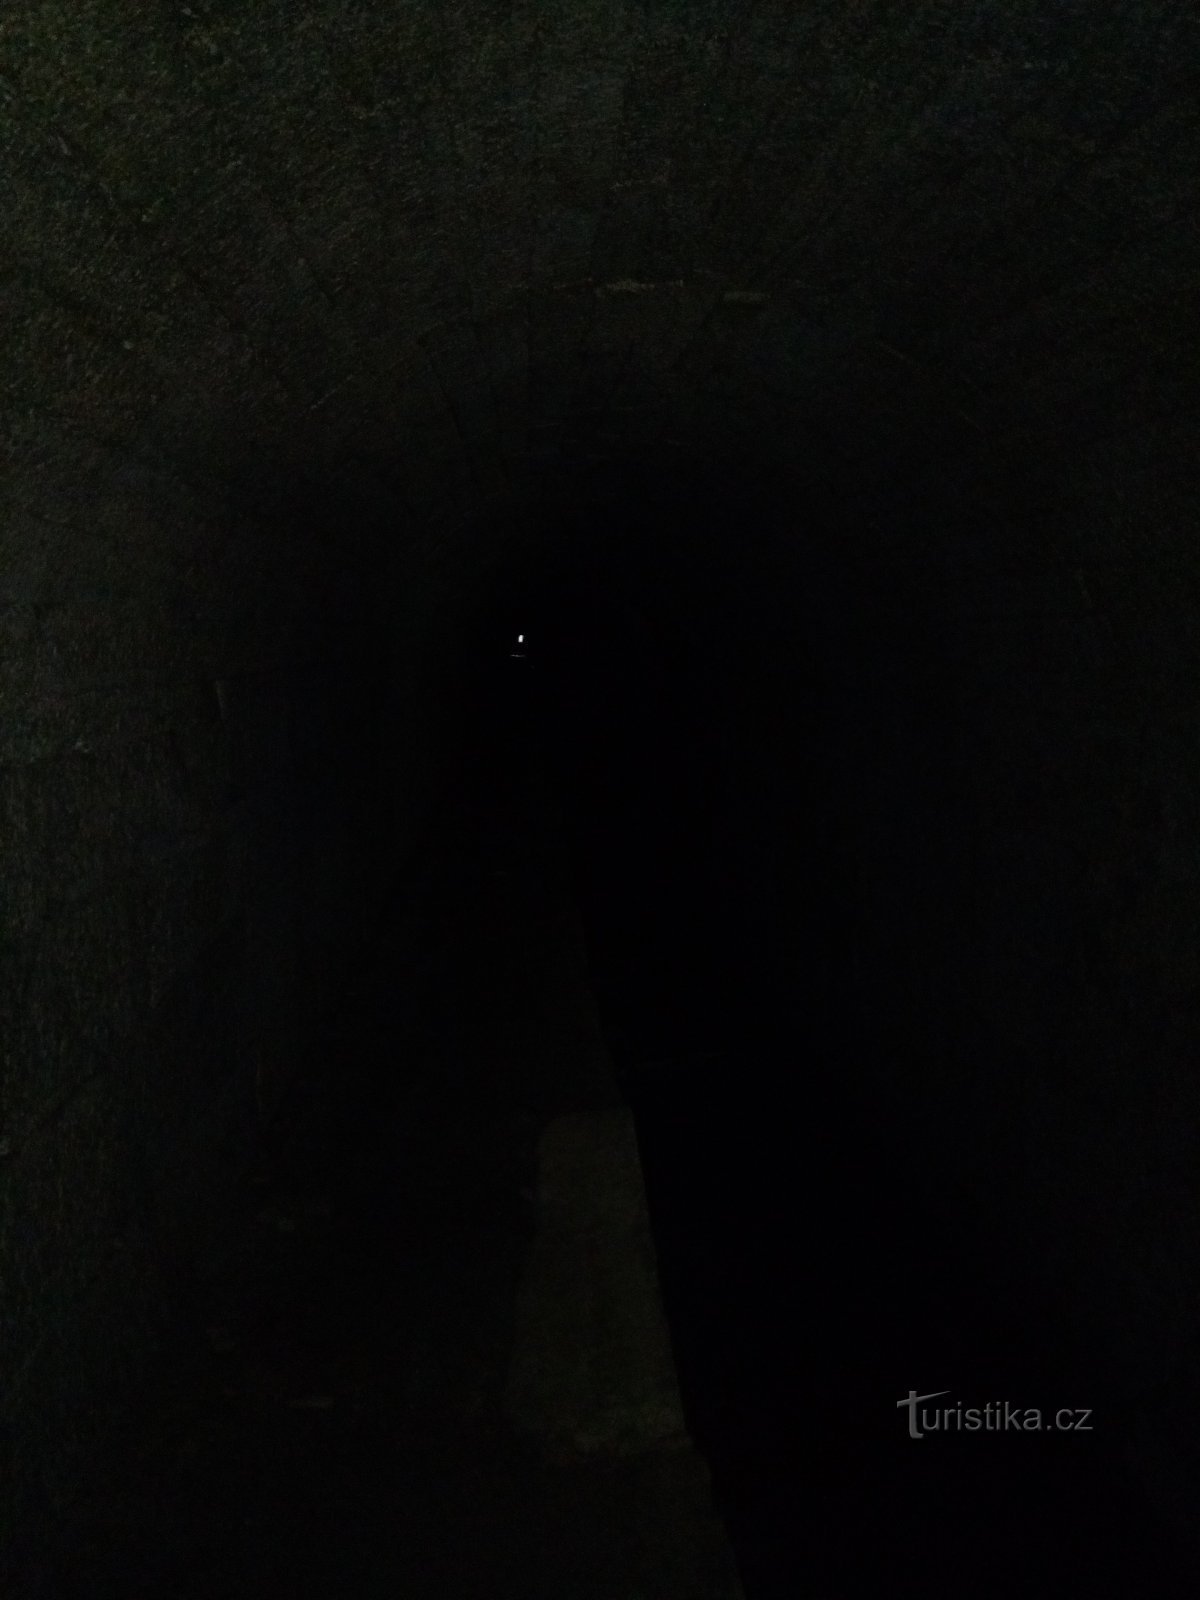 Ljus i slutet av tunneln